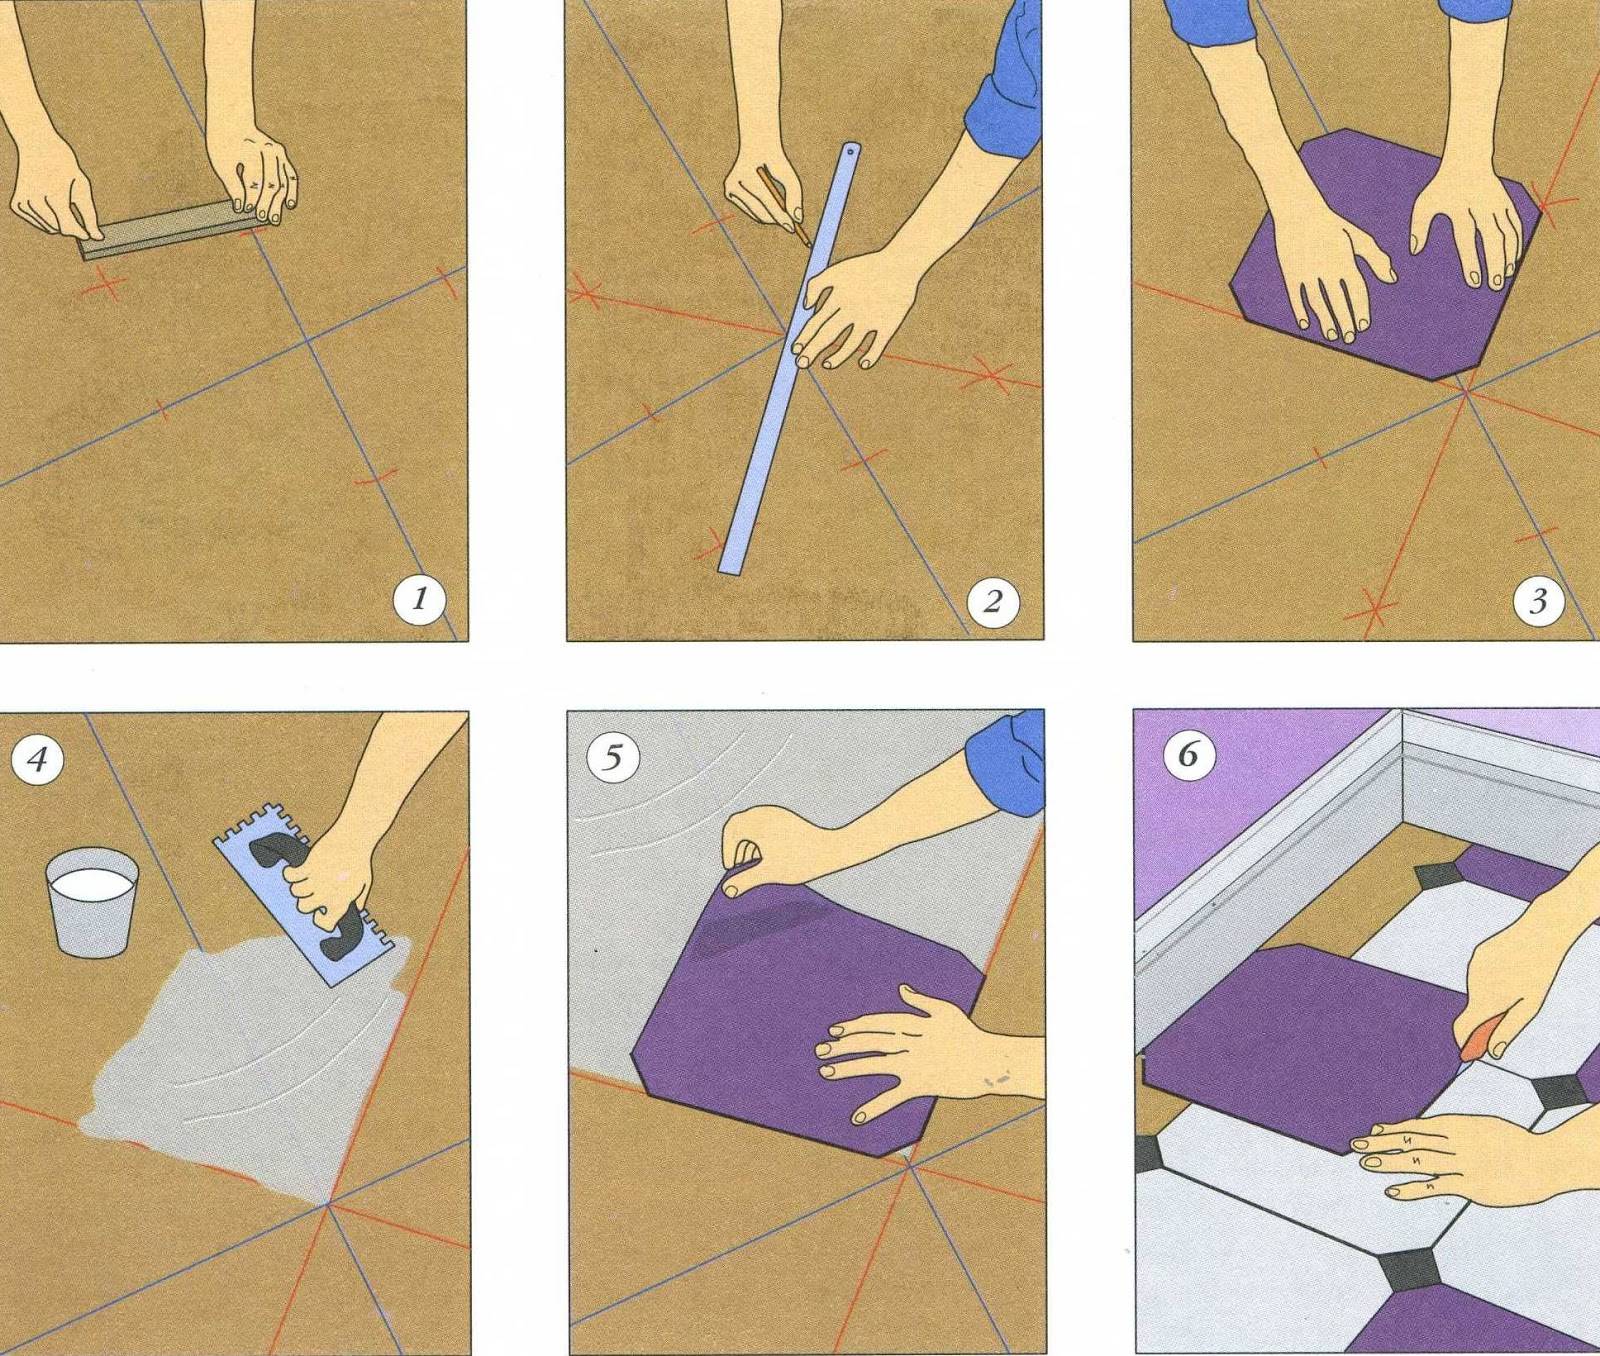 Как класть плитку на стену: кладем плитку своими руками с фото инструкцией